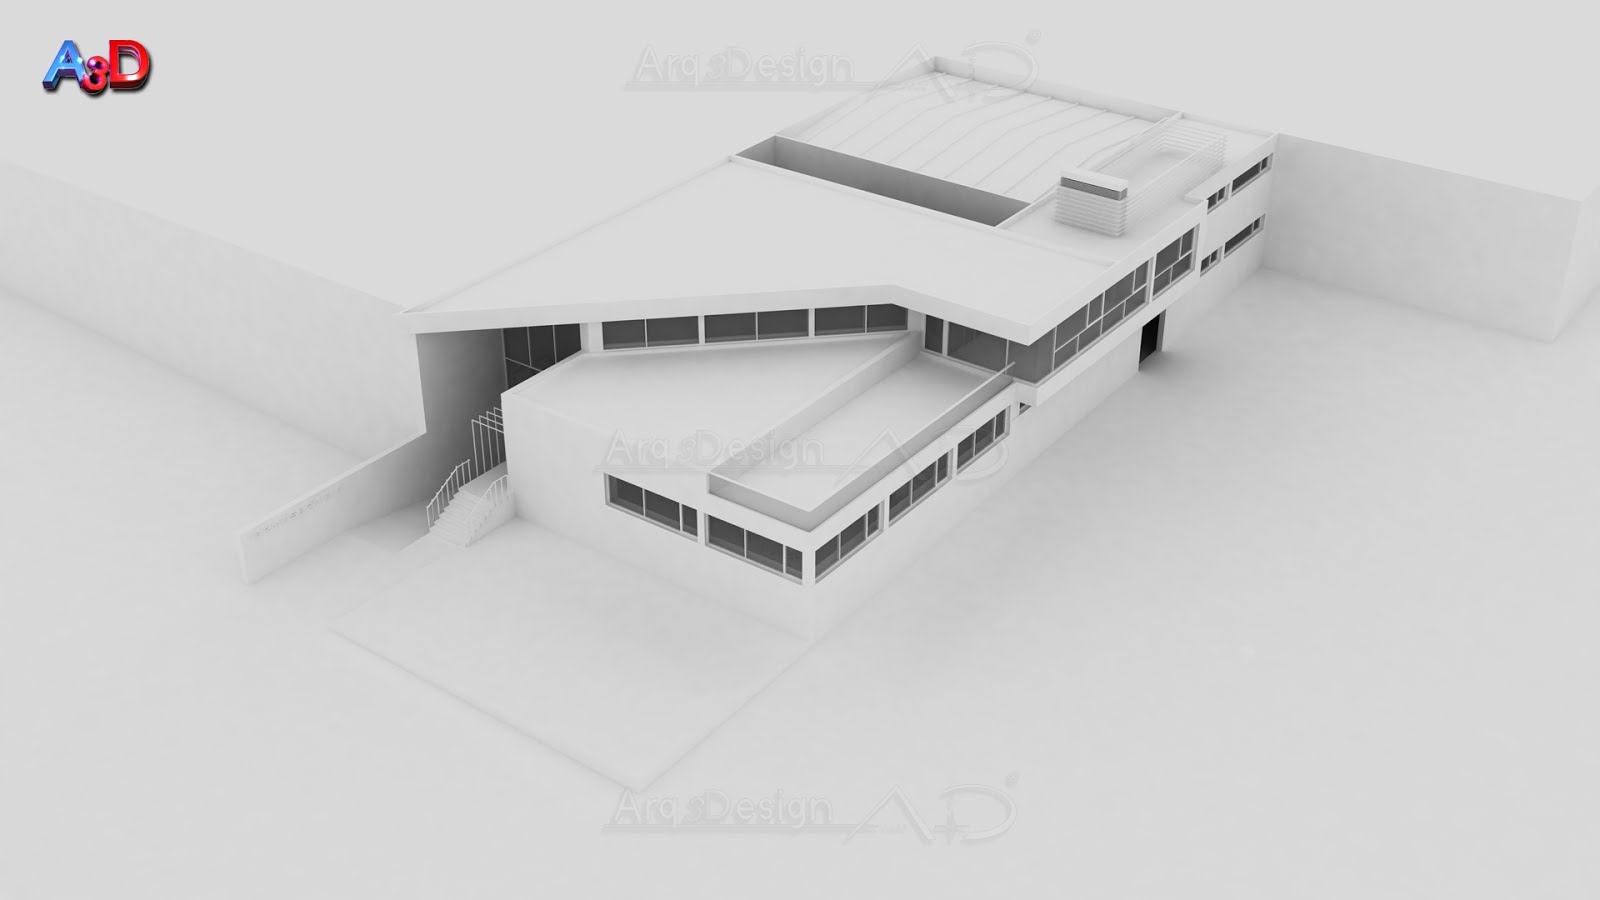 Proyecto 3D A3D Arq3Design